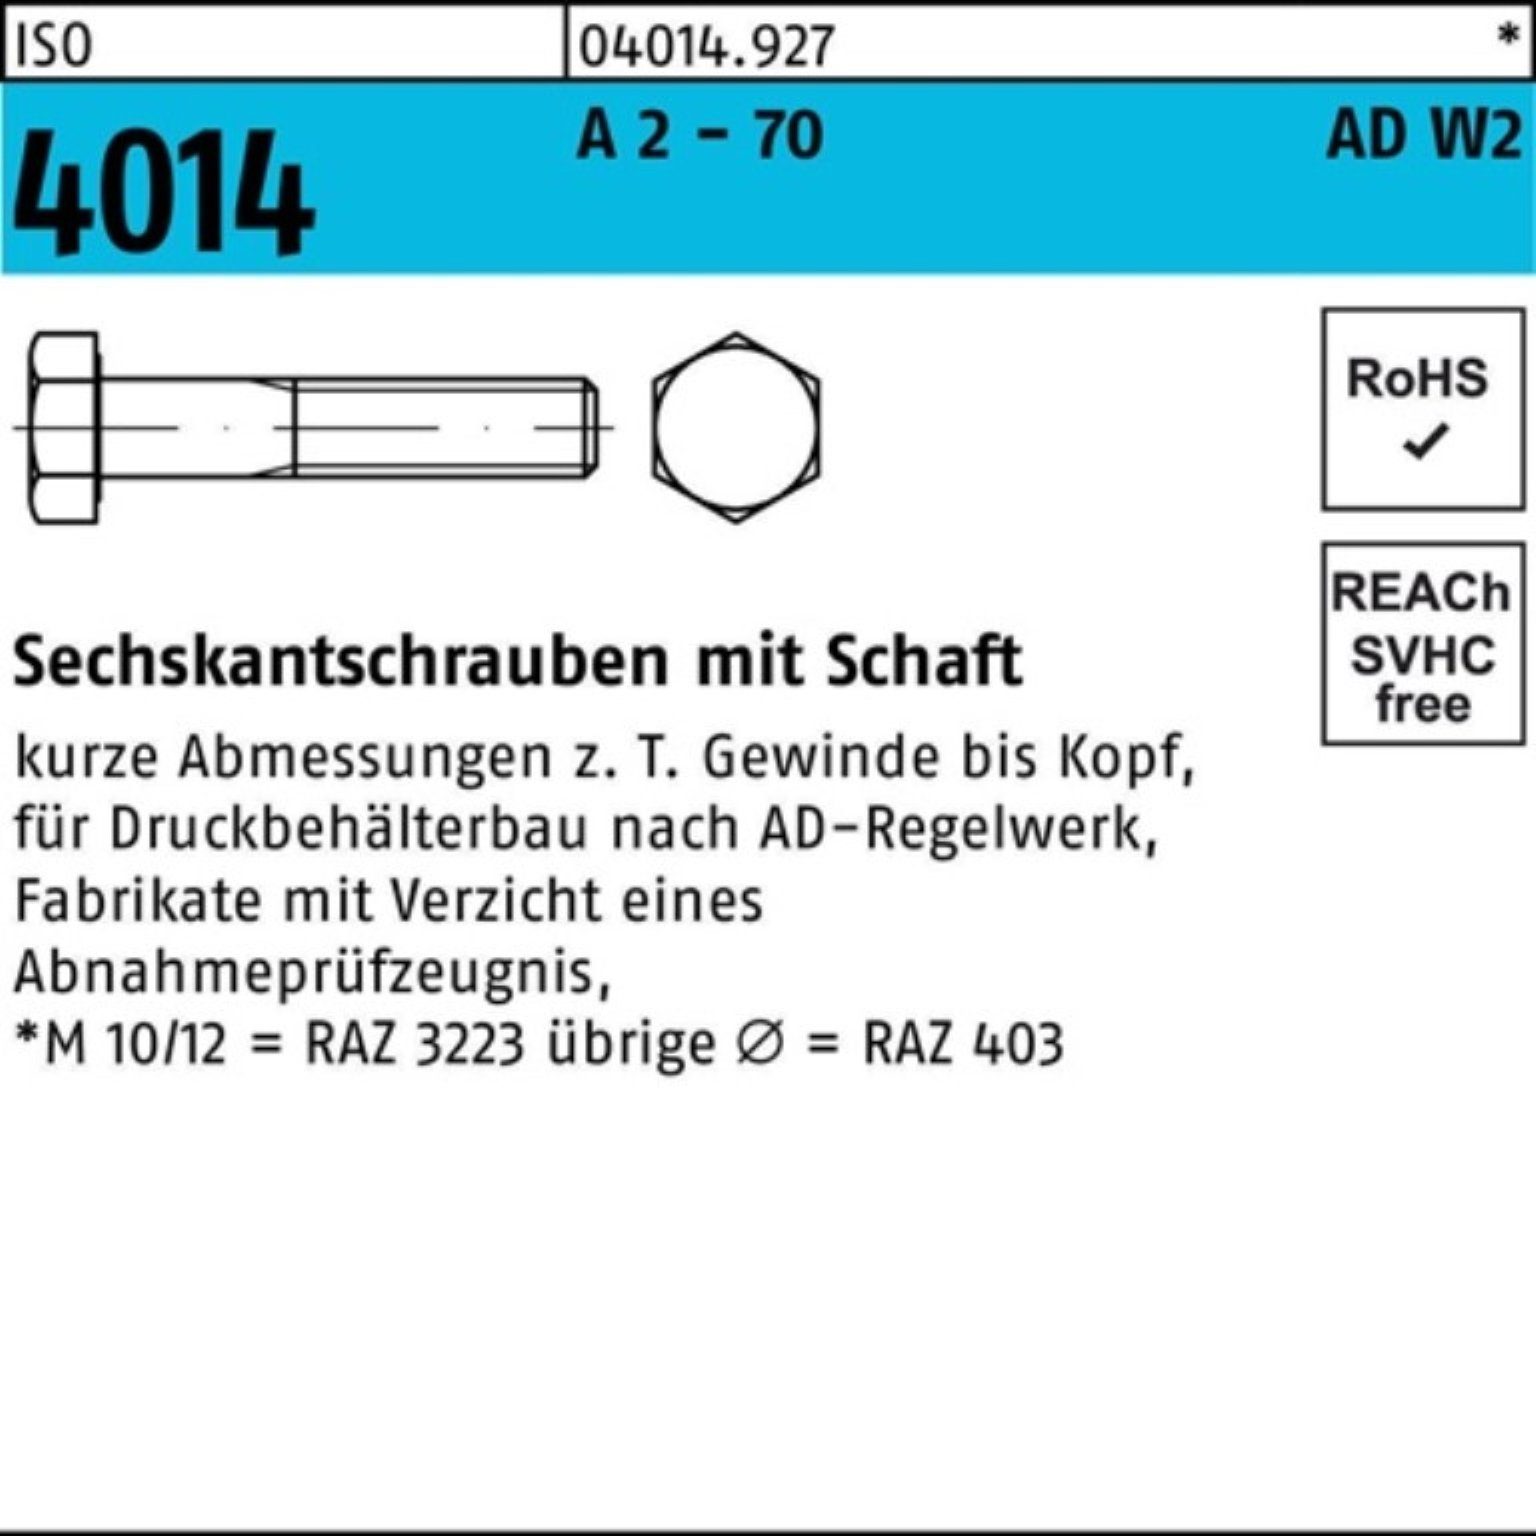 Bufab Sechskantschraube 100er Pack Sechskantschraube 2 M20x 4014 140 A 70 Schaft 1 ISO - AD-W2